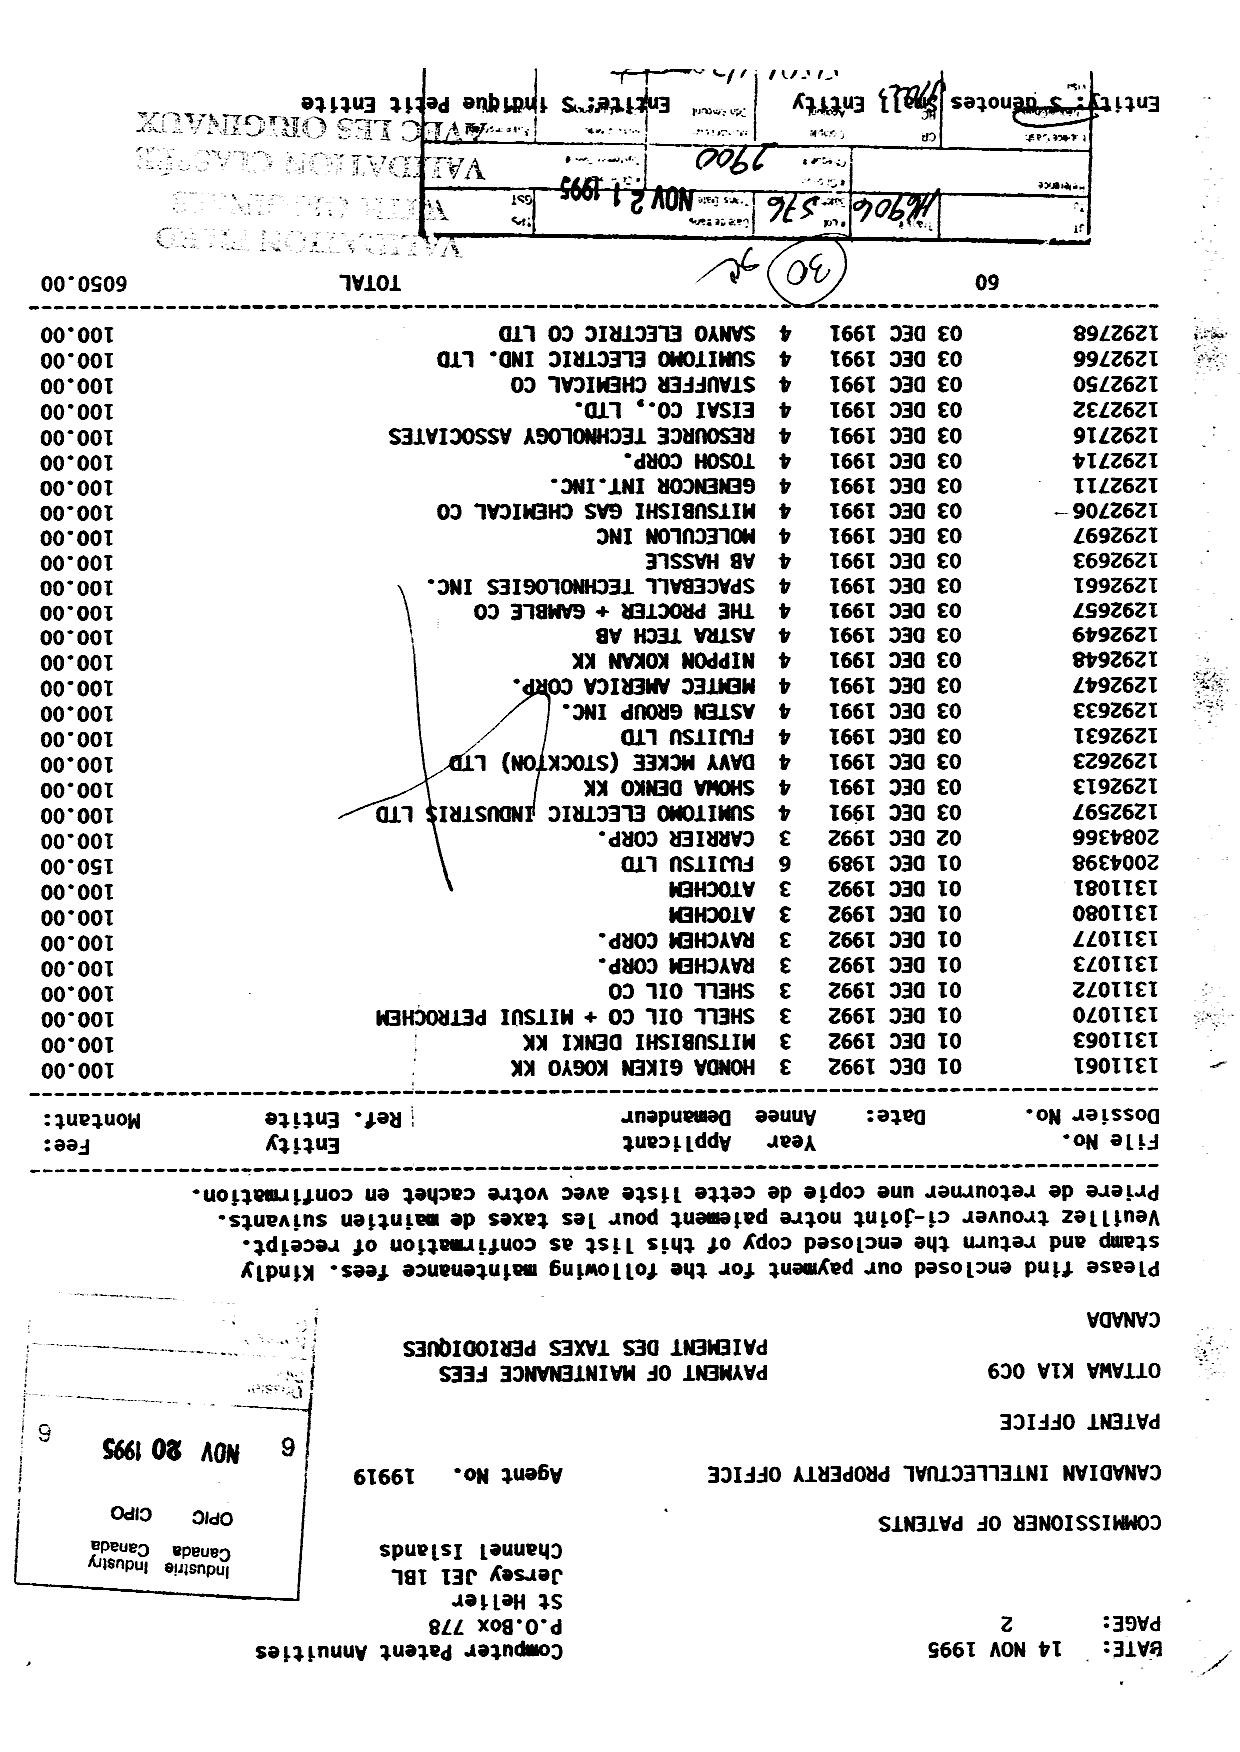 Document de brevet canadien 1292693. Taxes 19941220. Image 1 de 1